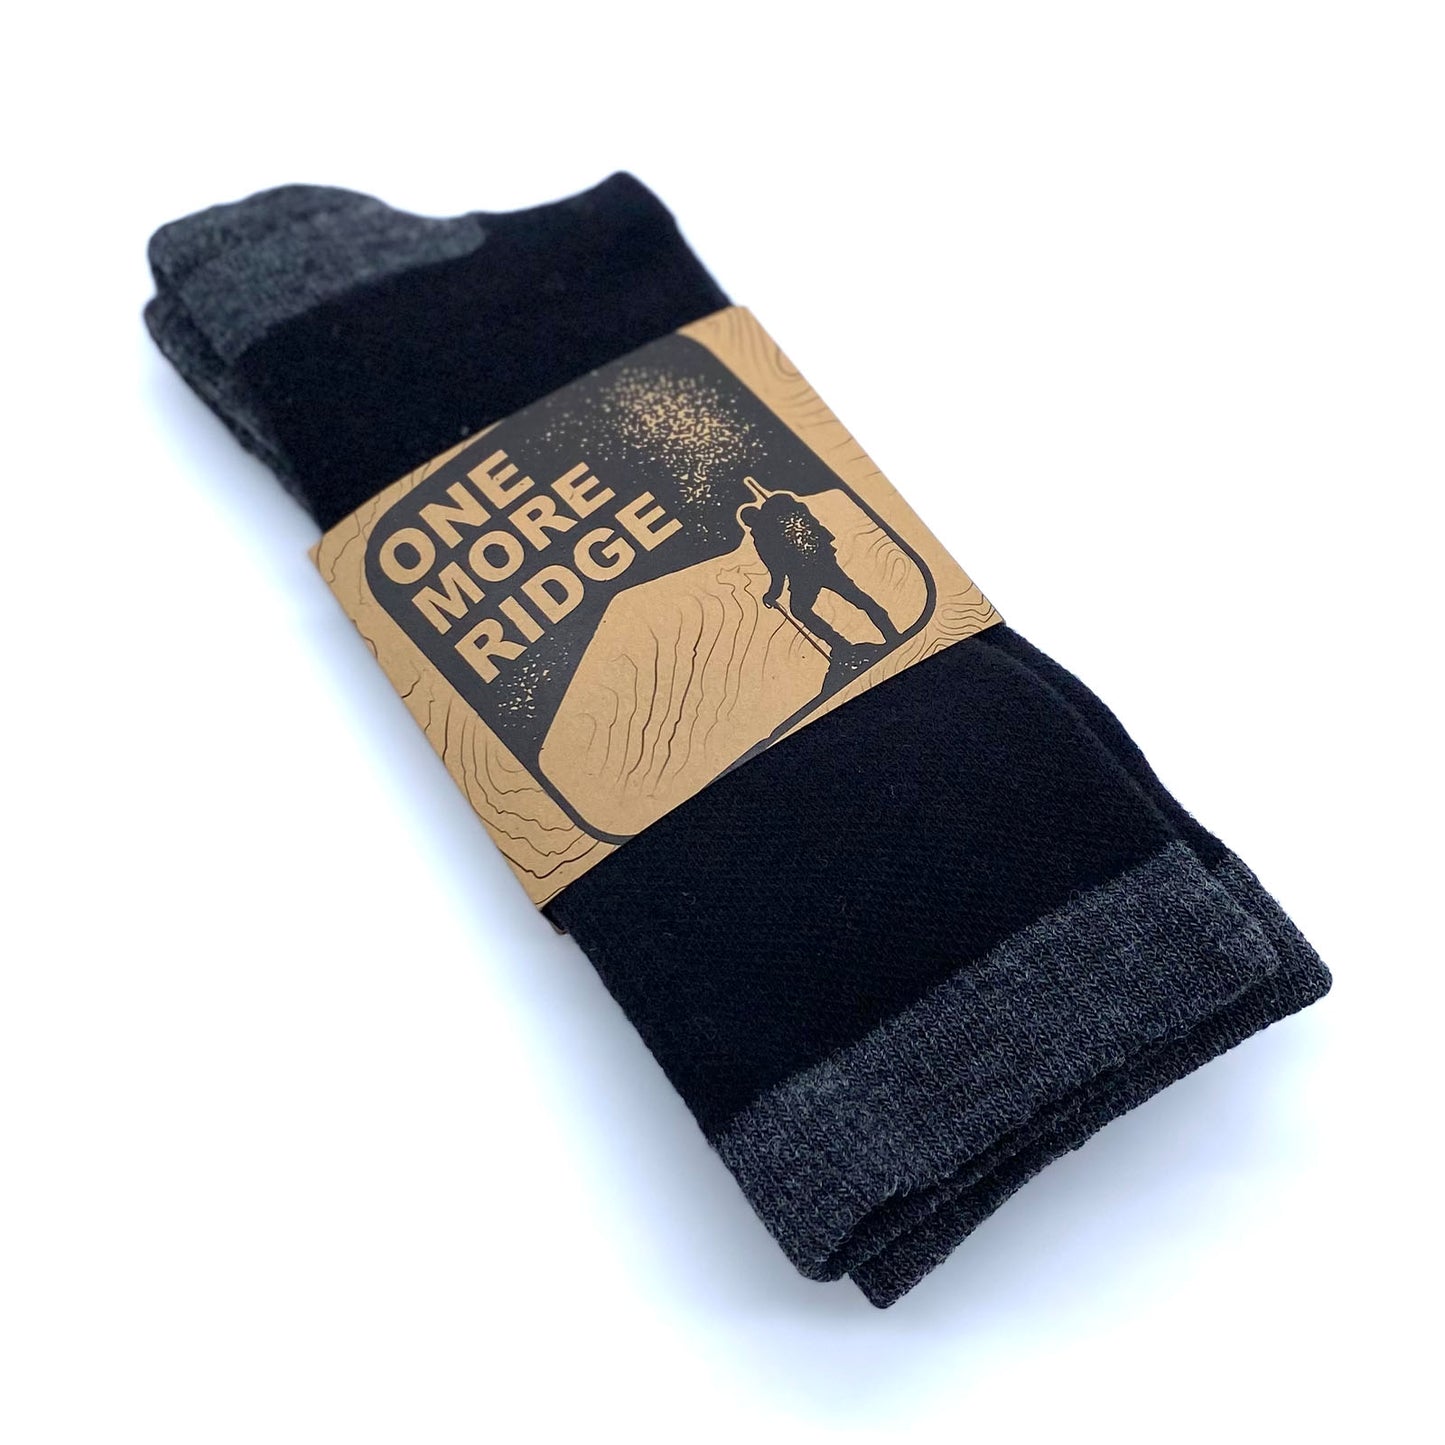 One More Ridge Merino Wool Sock